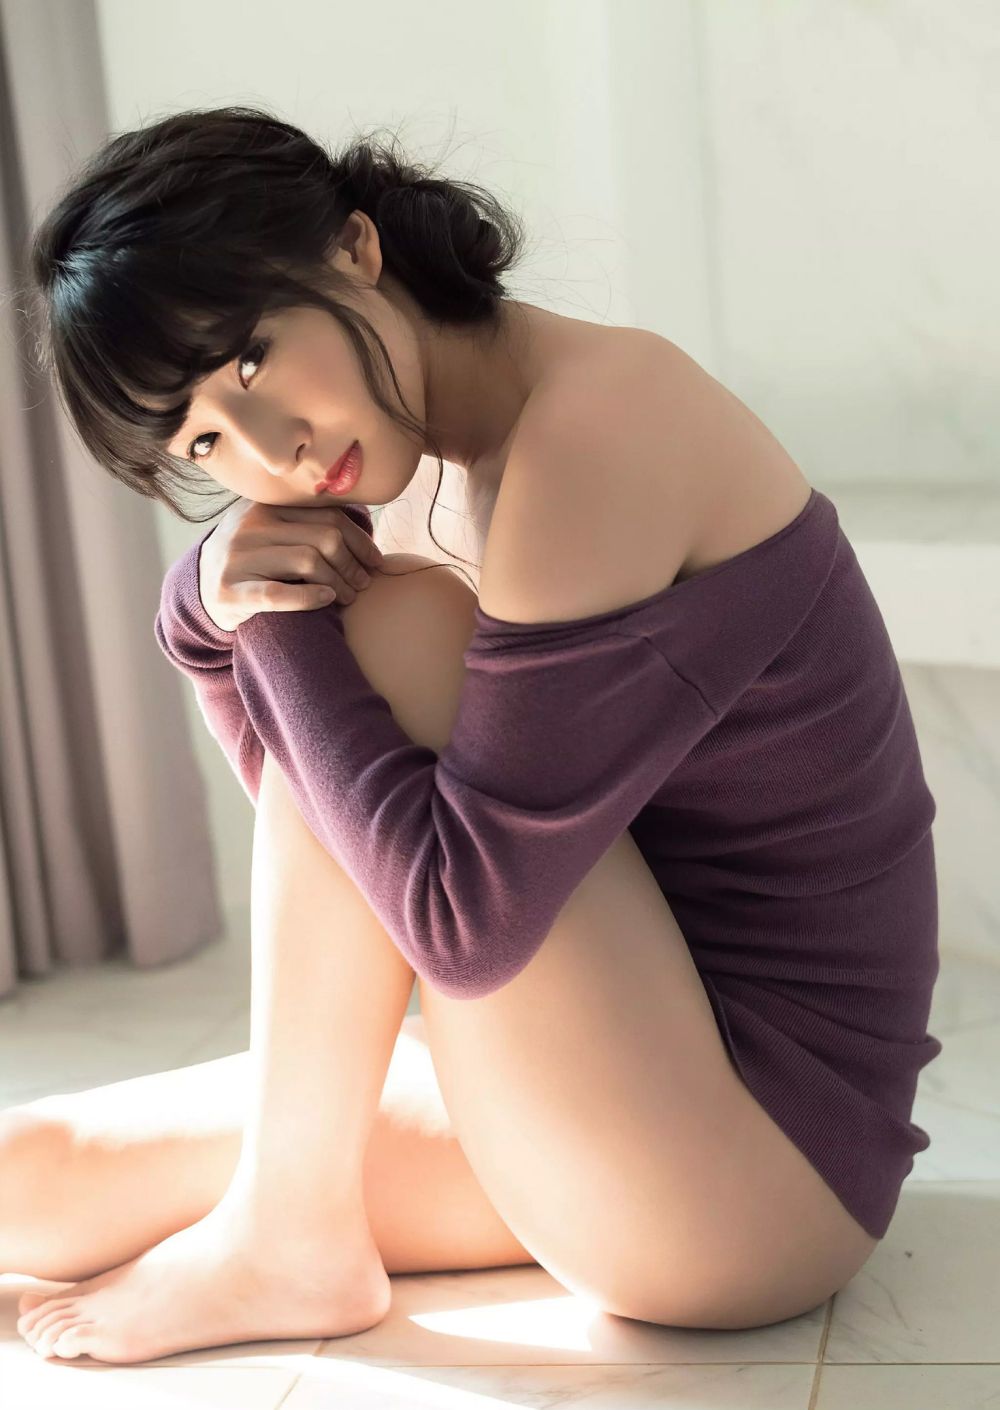 川崎绫 Sexy and Hottest Photos , Latest Pics